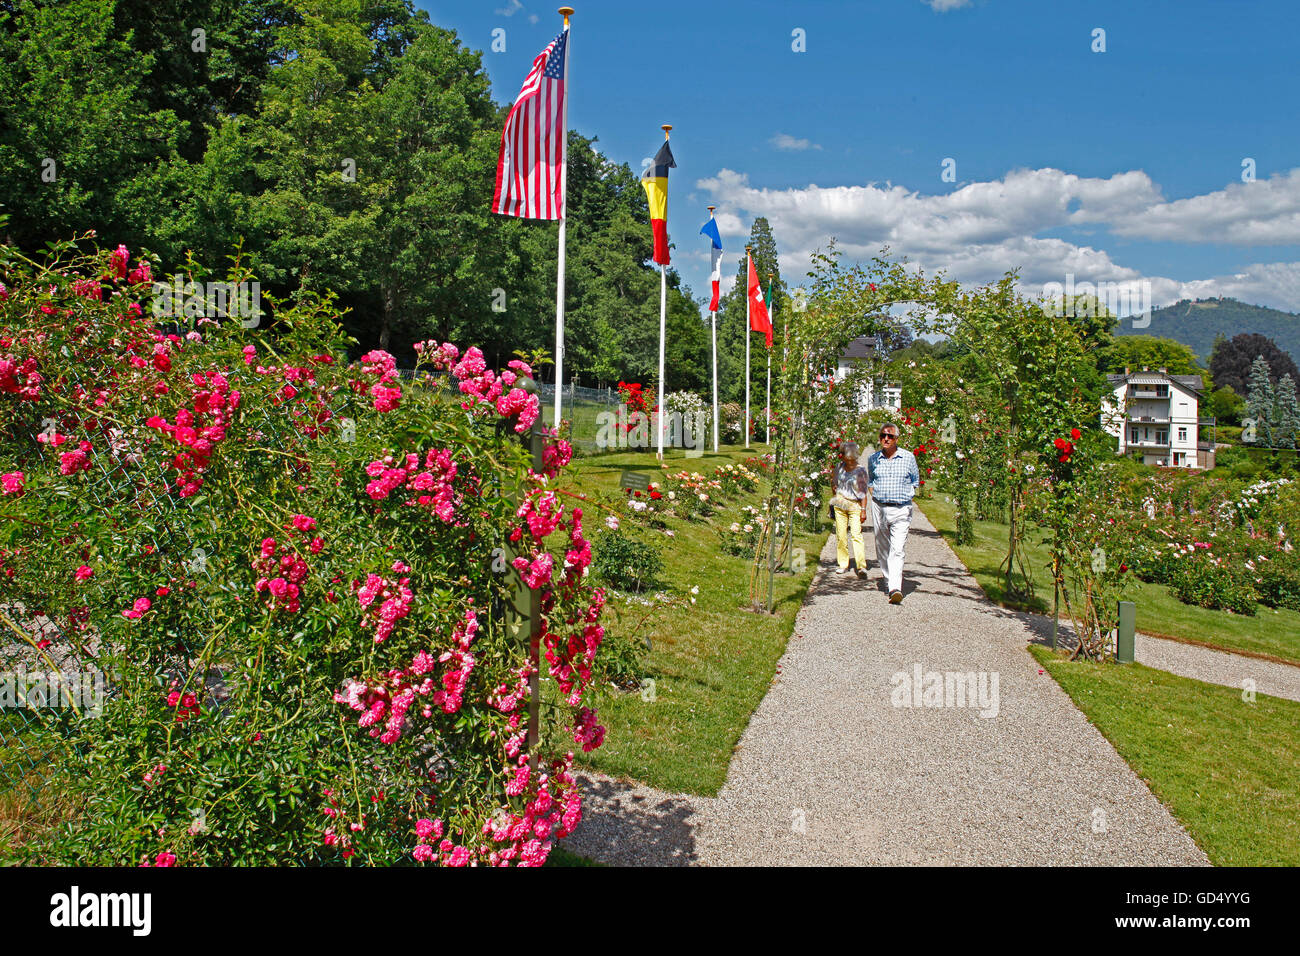 Jardin de roses, Rosengarten, Beutig, Moltkestrasse, Baden-Baden, Bade-Wurtemberg, Allemagne Banque D'Images